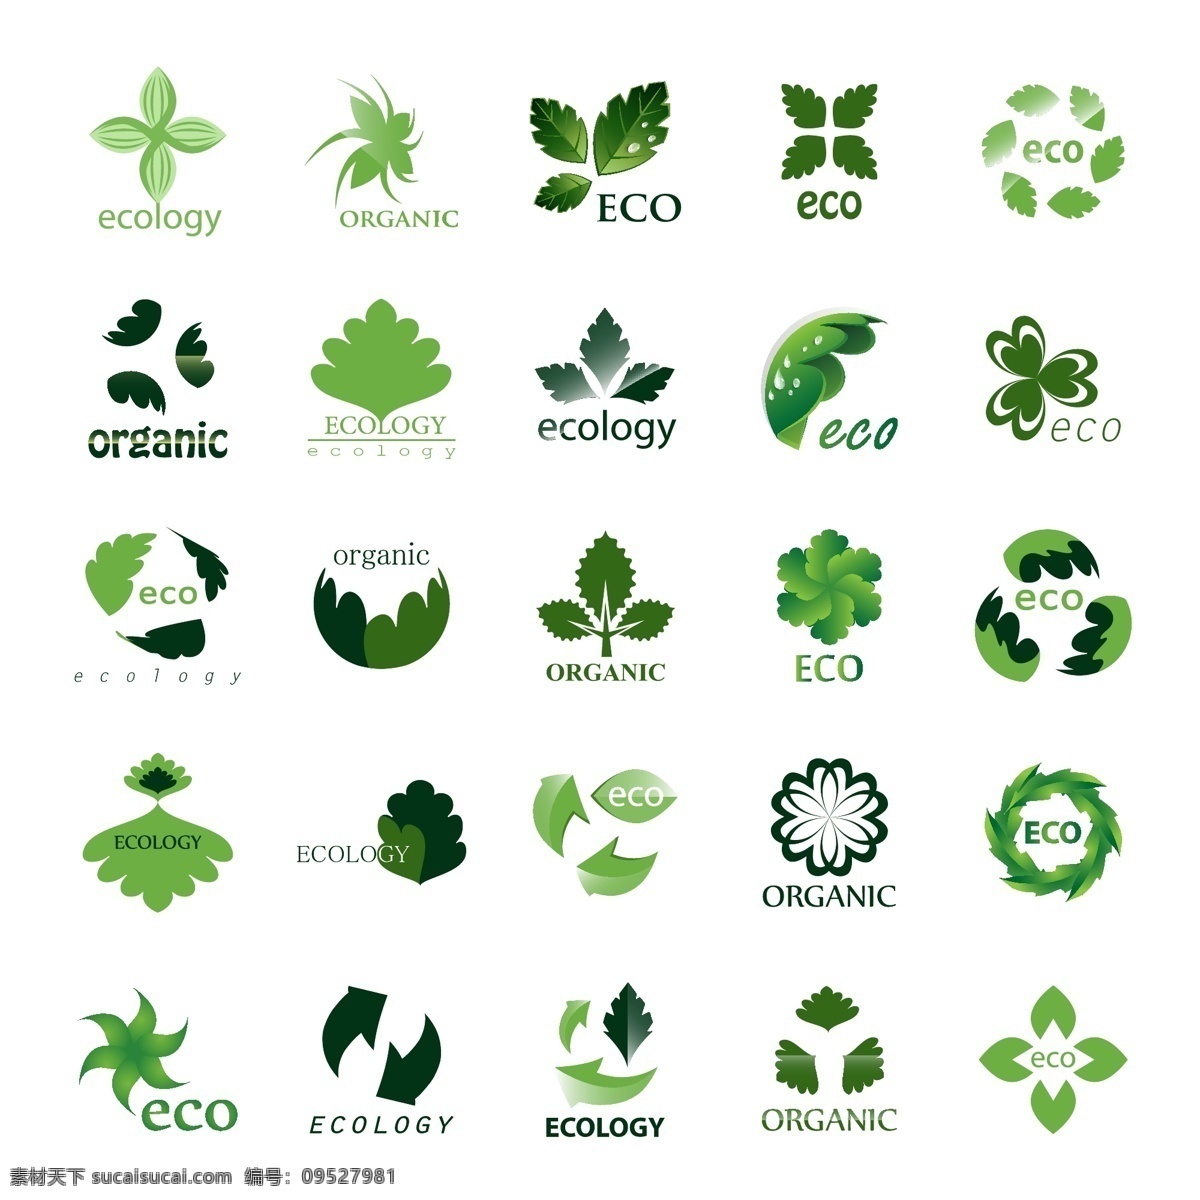 精美 环保 logo 图标 矢量 绿色环保 环境保护 设计模板下载 设计创意 logo图形 设计公司 企业 生 态 logo设计 标志图 标志图标 公共标识标志